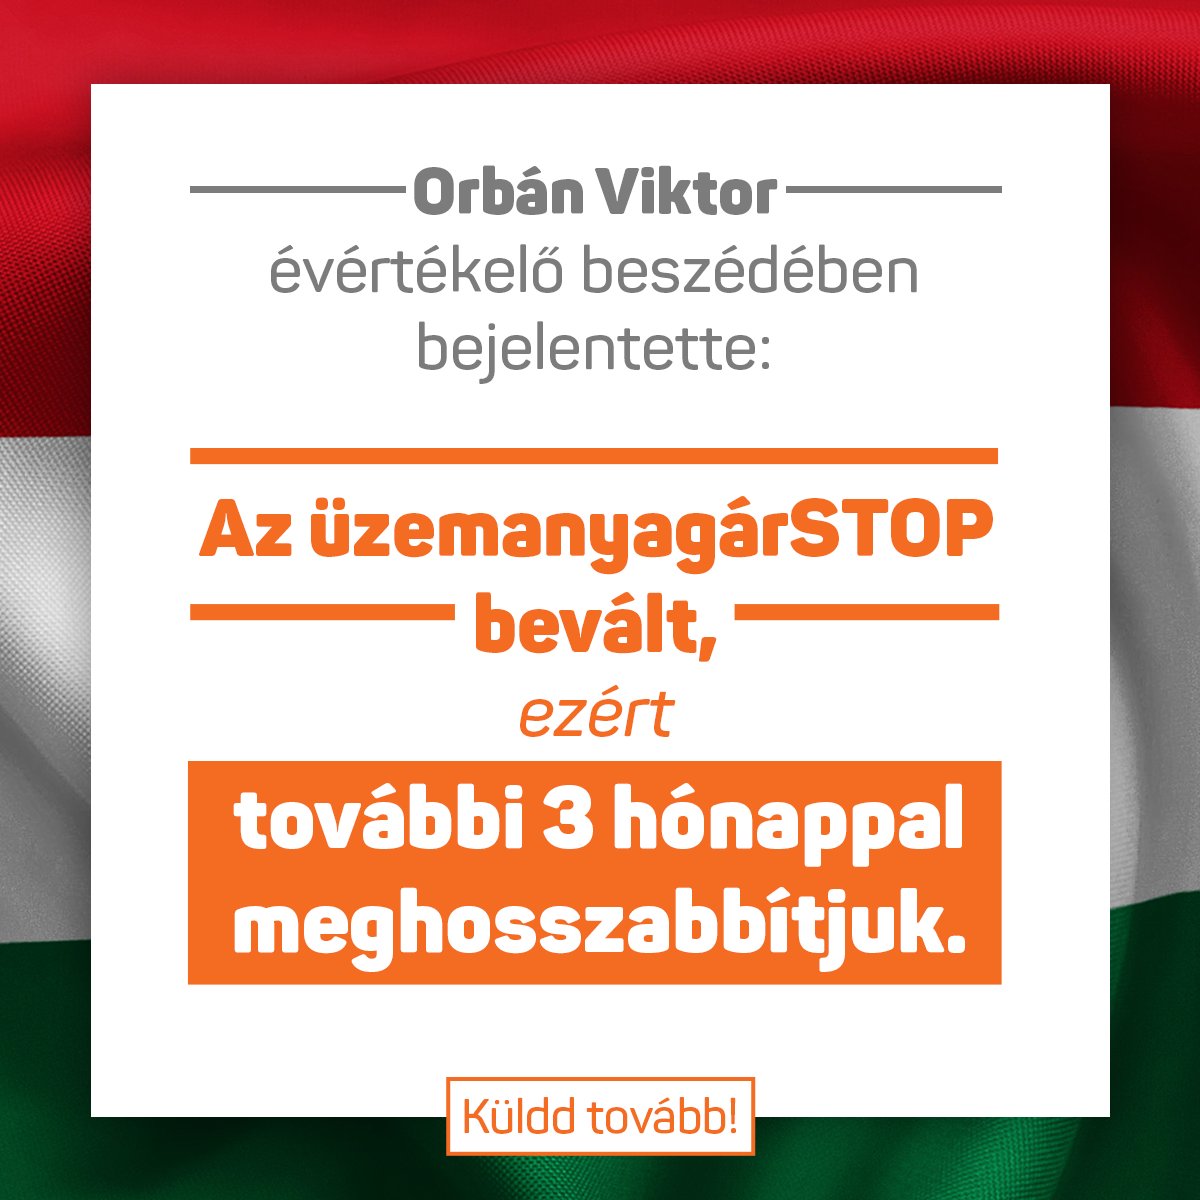 Orbán Viktor bejelentette: “az üzemanyagárSTOP bevált, ezért további 3 hónappal meghosszabbítjuk!”